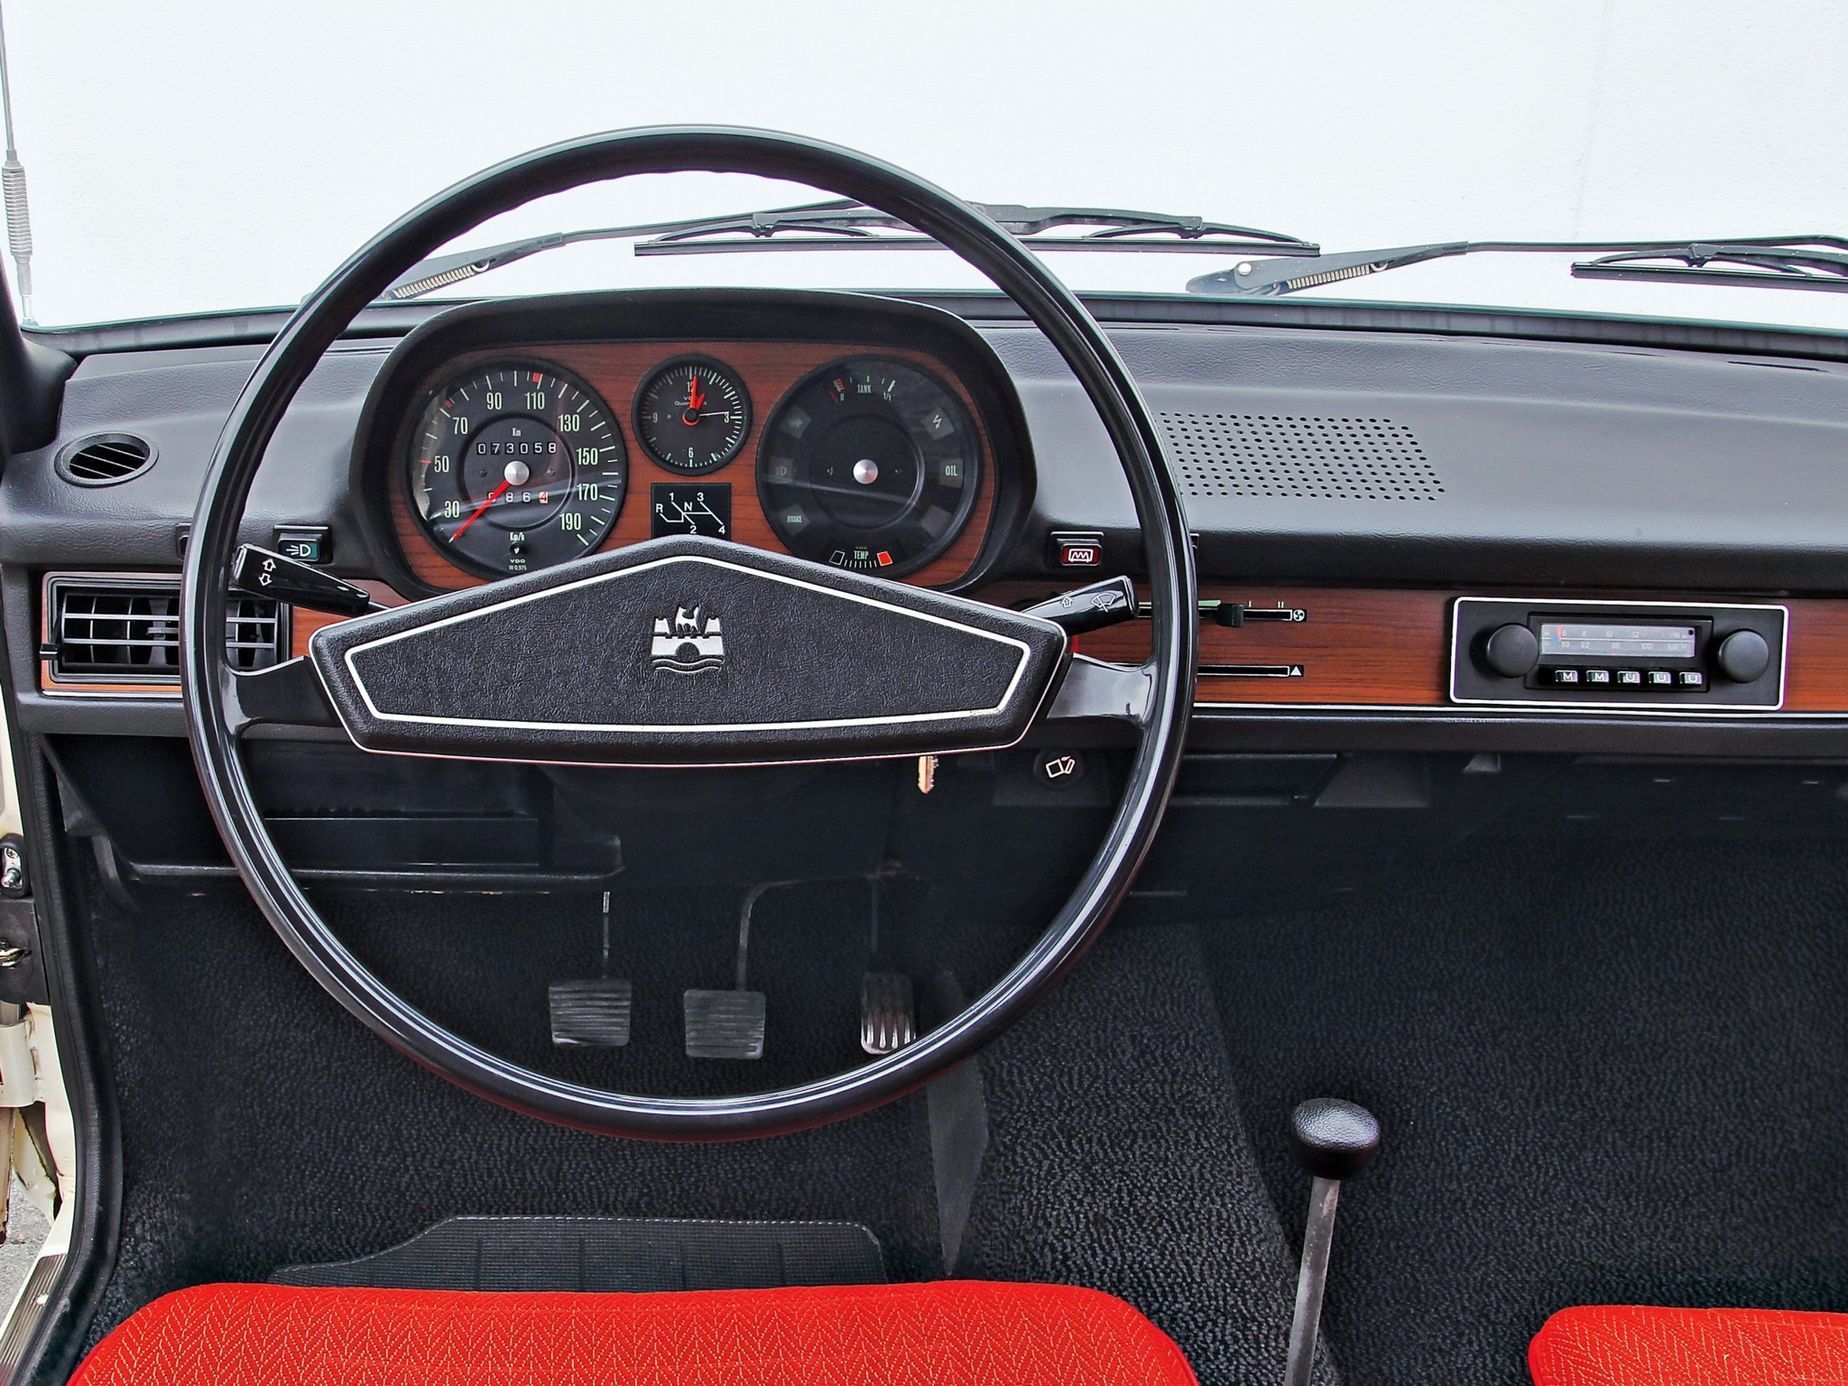 Volkswagen Passat I. gen 1973